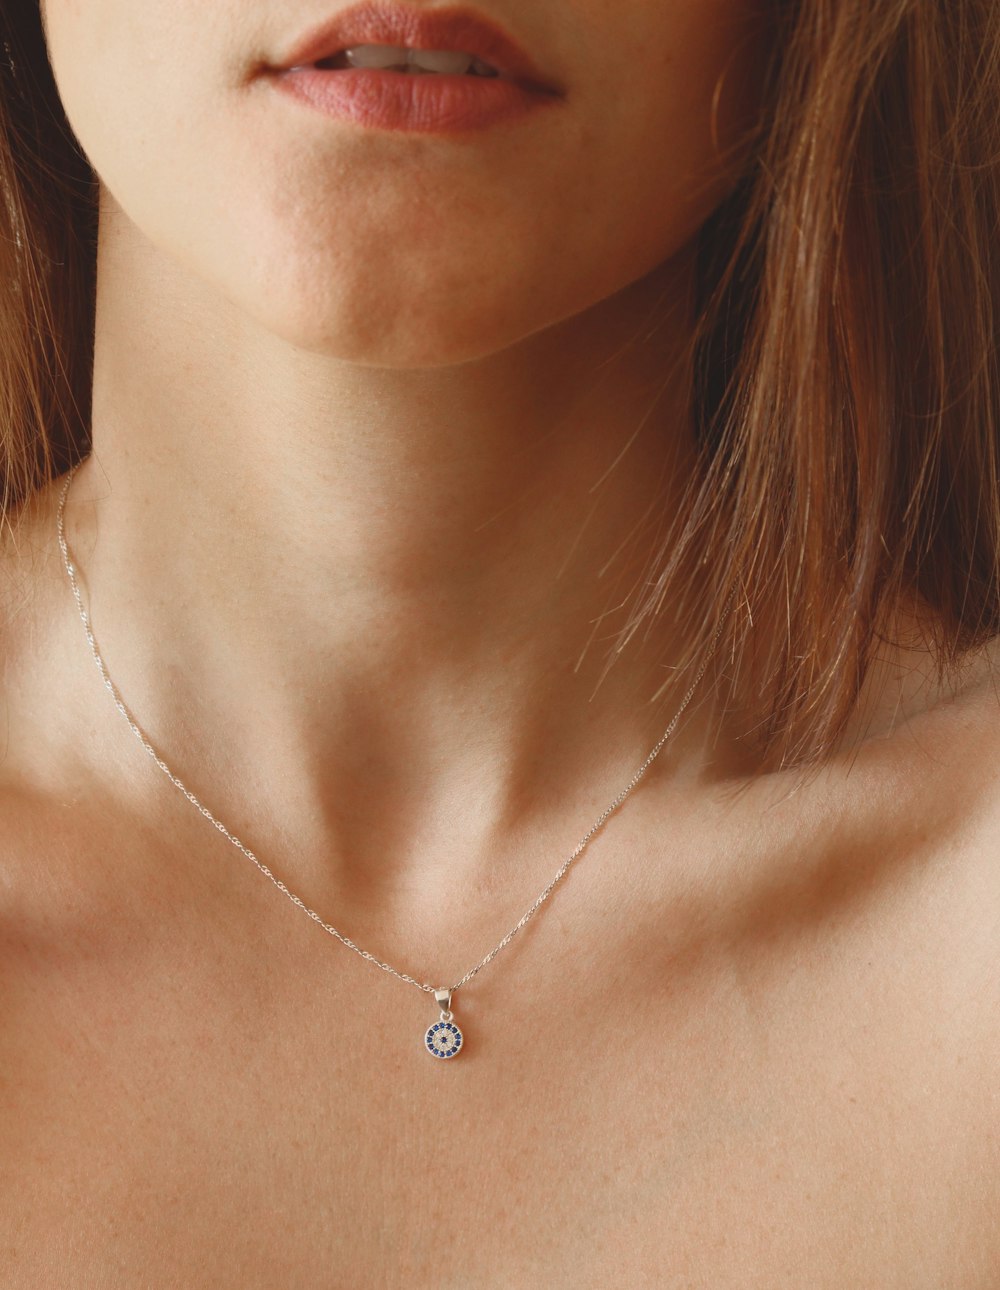 Frau trägt silberne Halskette mit Herzanhänger